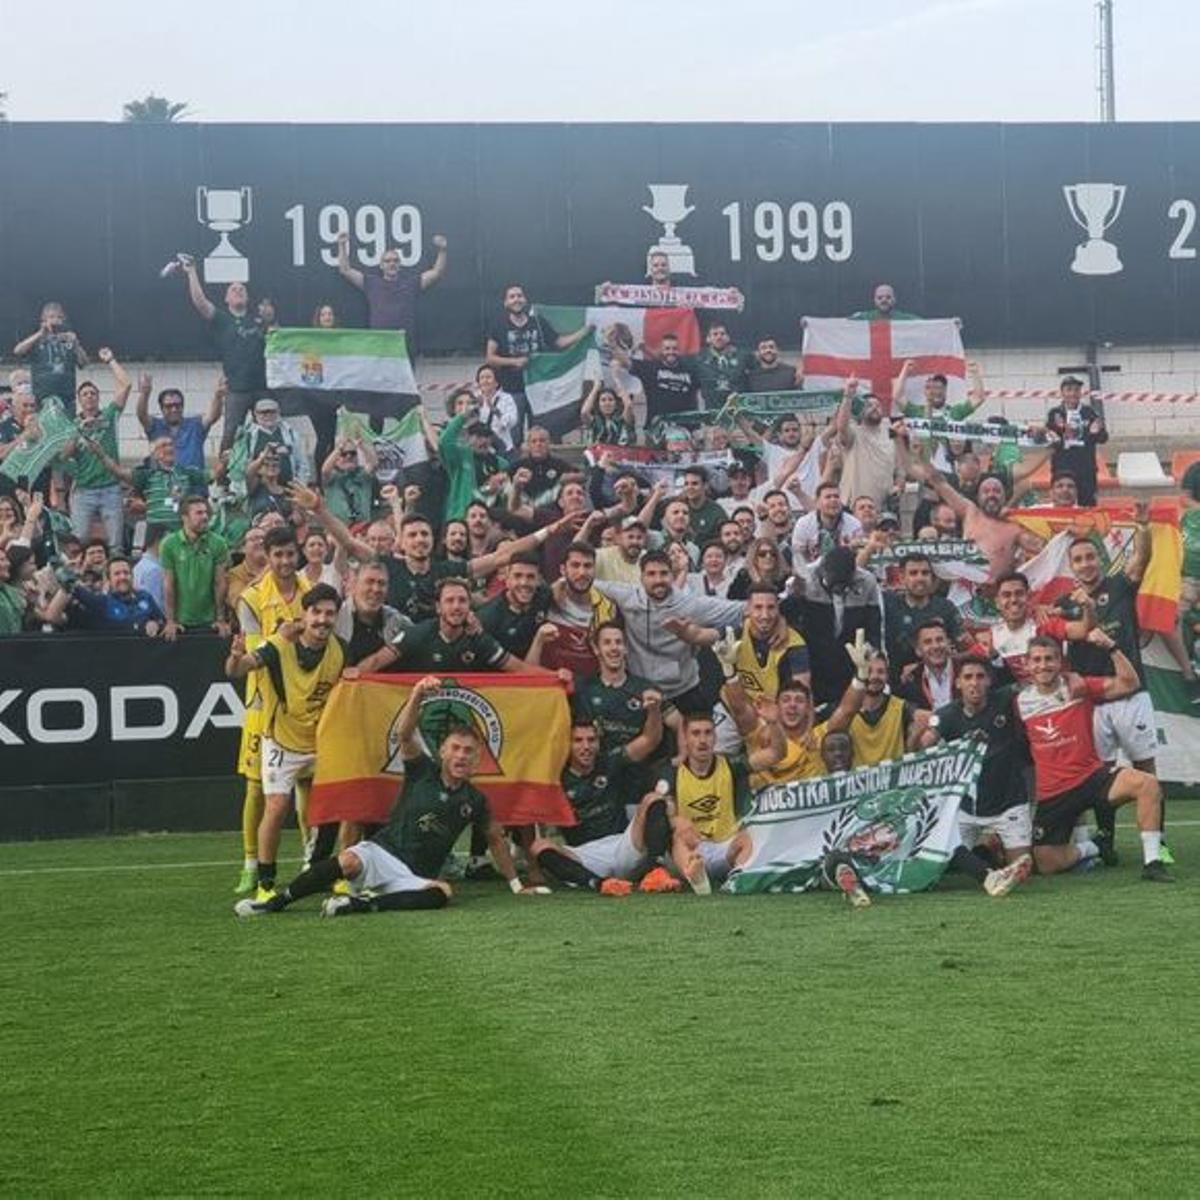 Los jugadores del Cacereño celebran la victoria junto a los aficionados verdes.